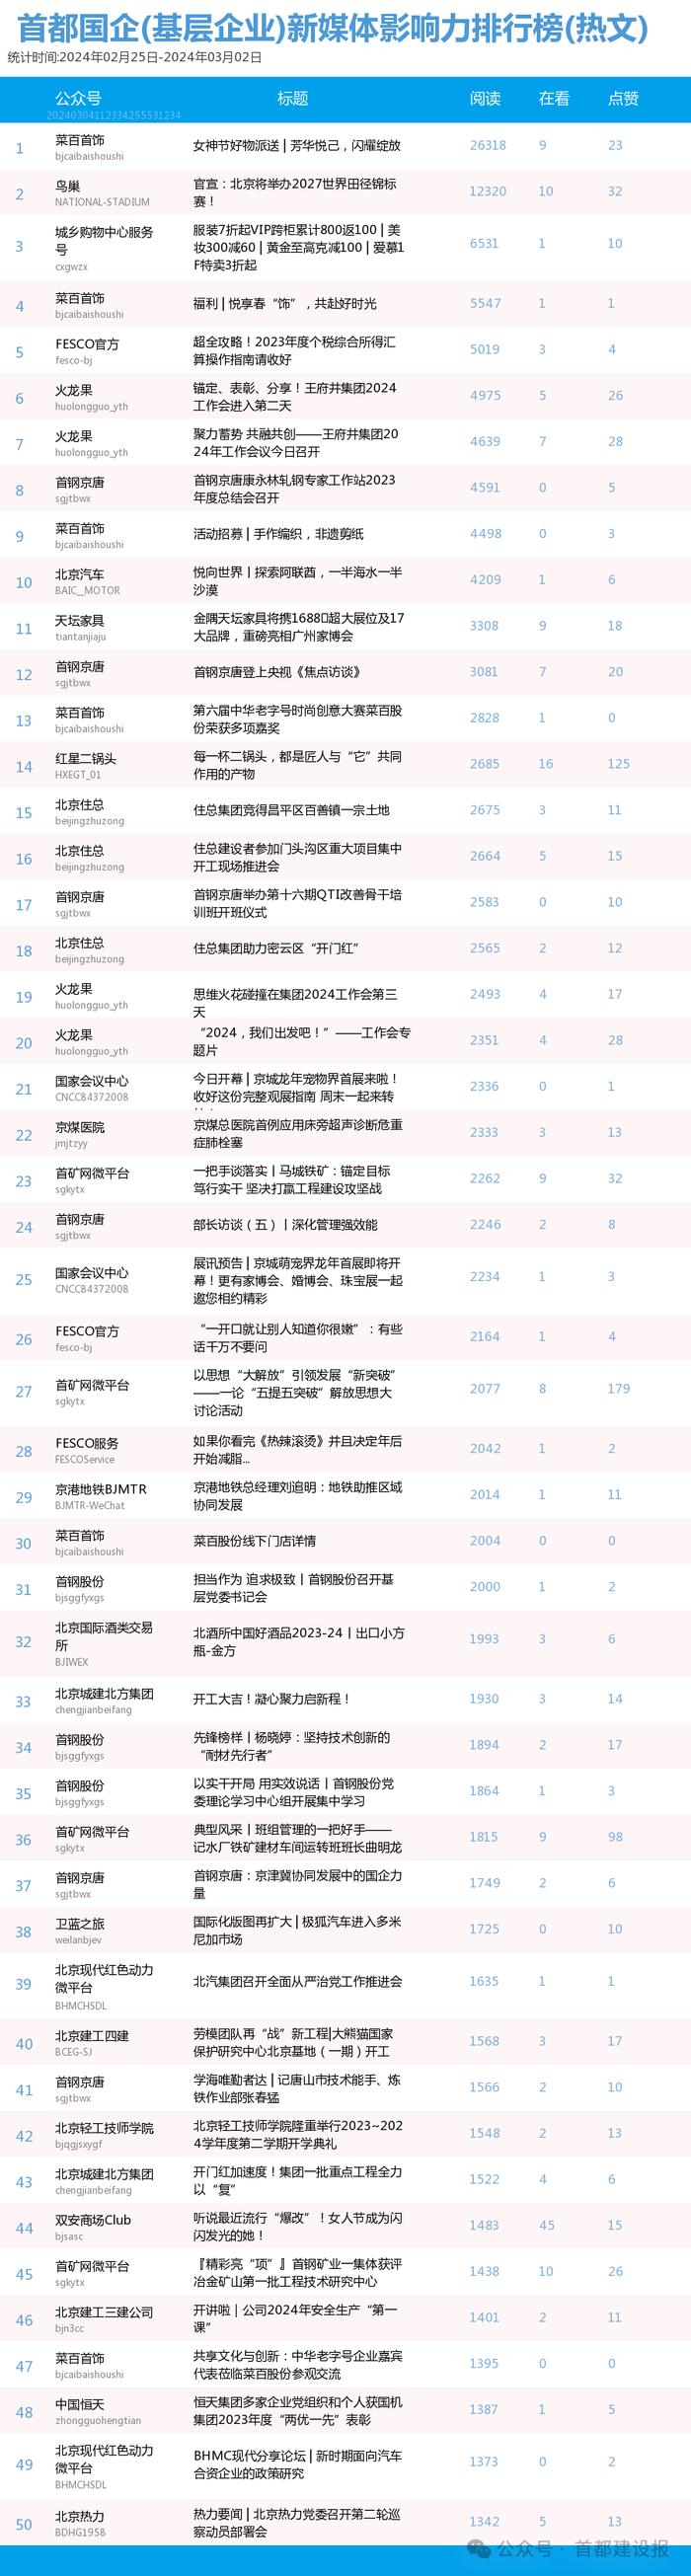 【北京国企新媒体影响力排行榜】2月月榜及周榜(2.25-3.2)第397期